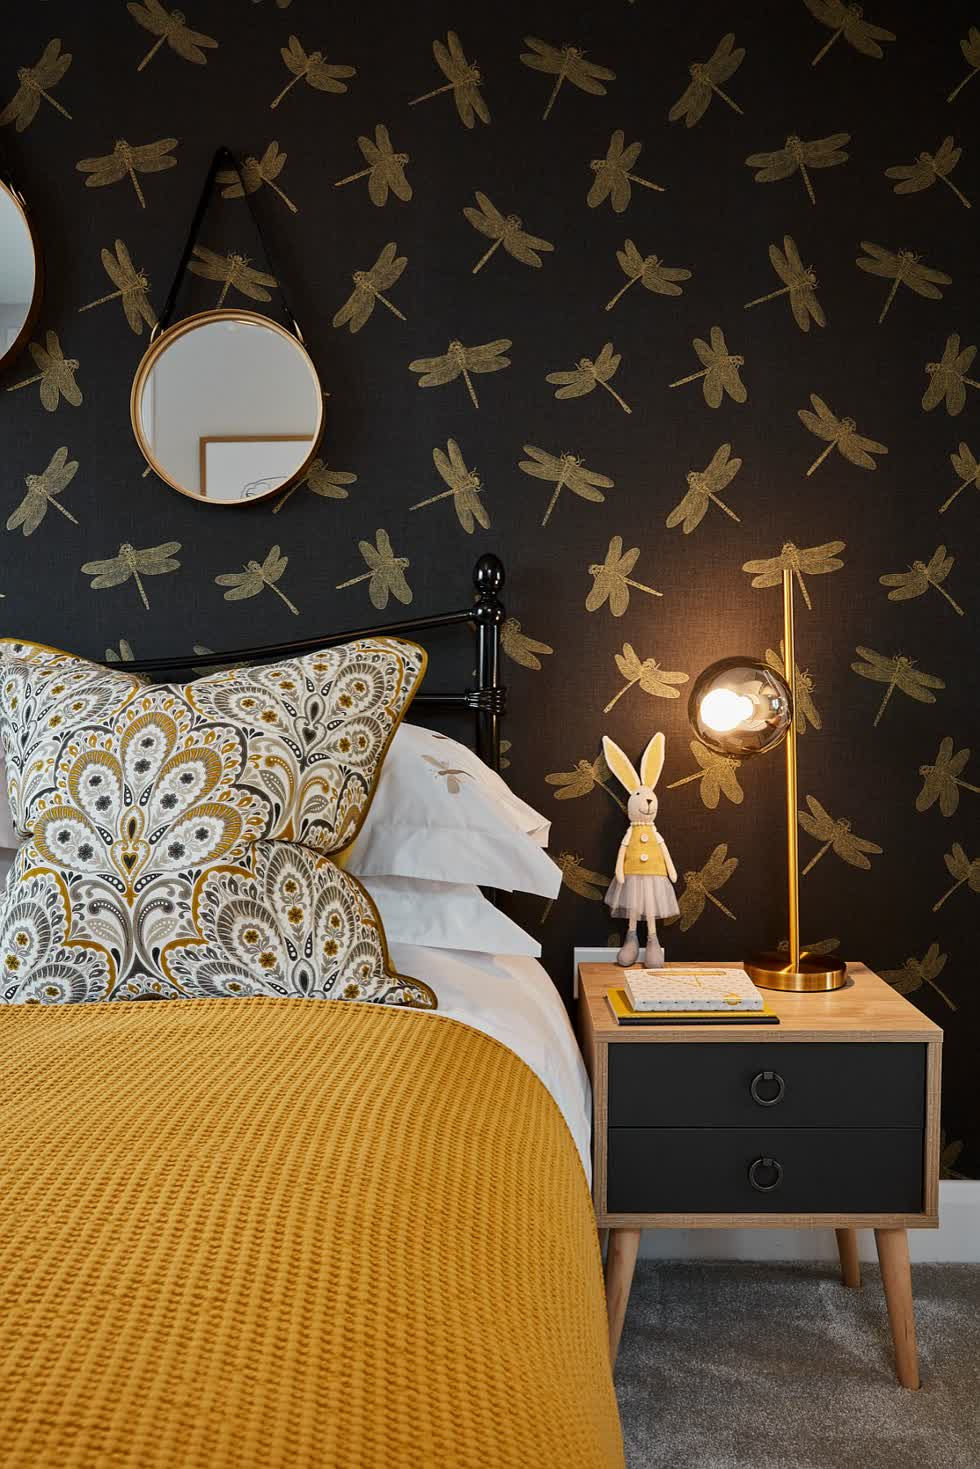   Sắc vàng - đen là phông nền được yêu thích cho phòng ngủ đương đại.  